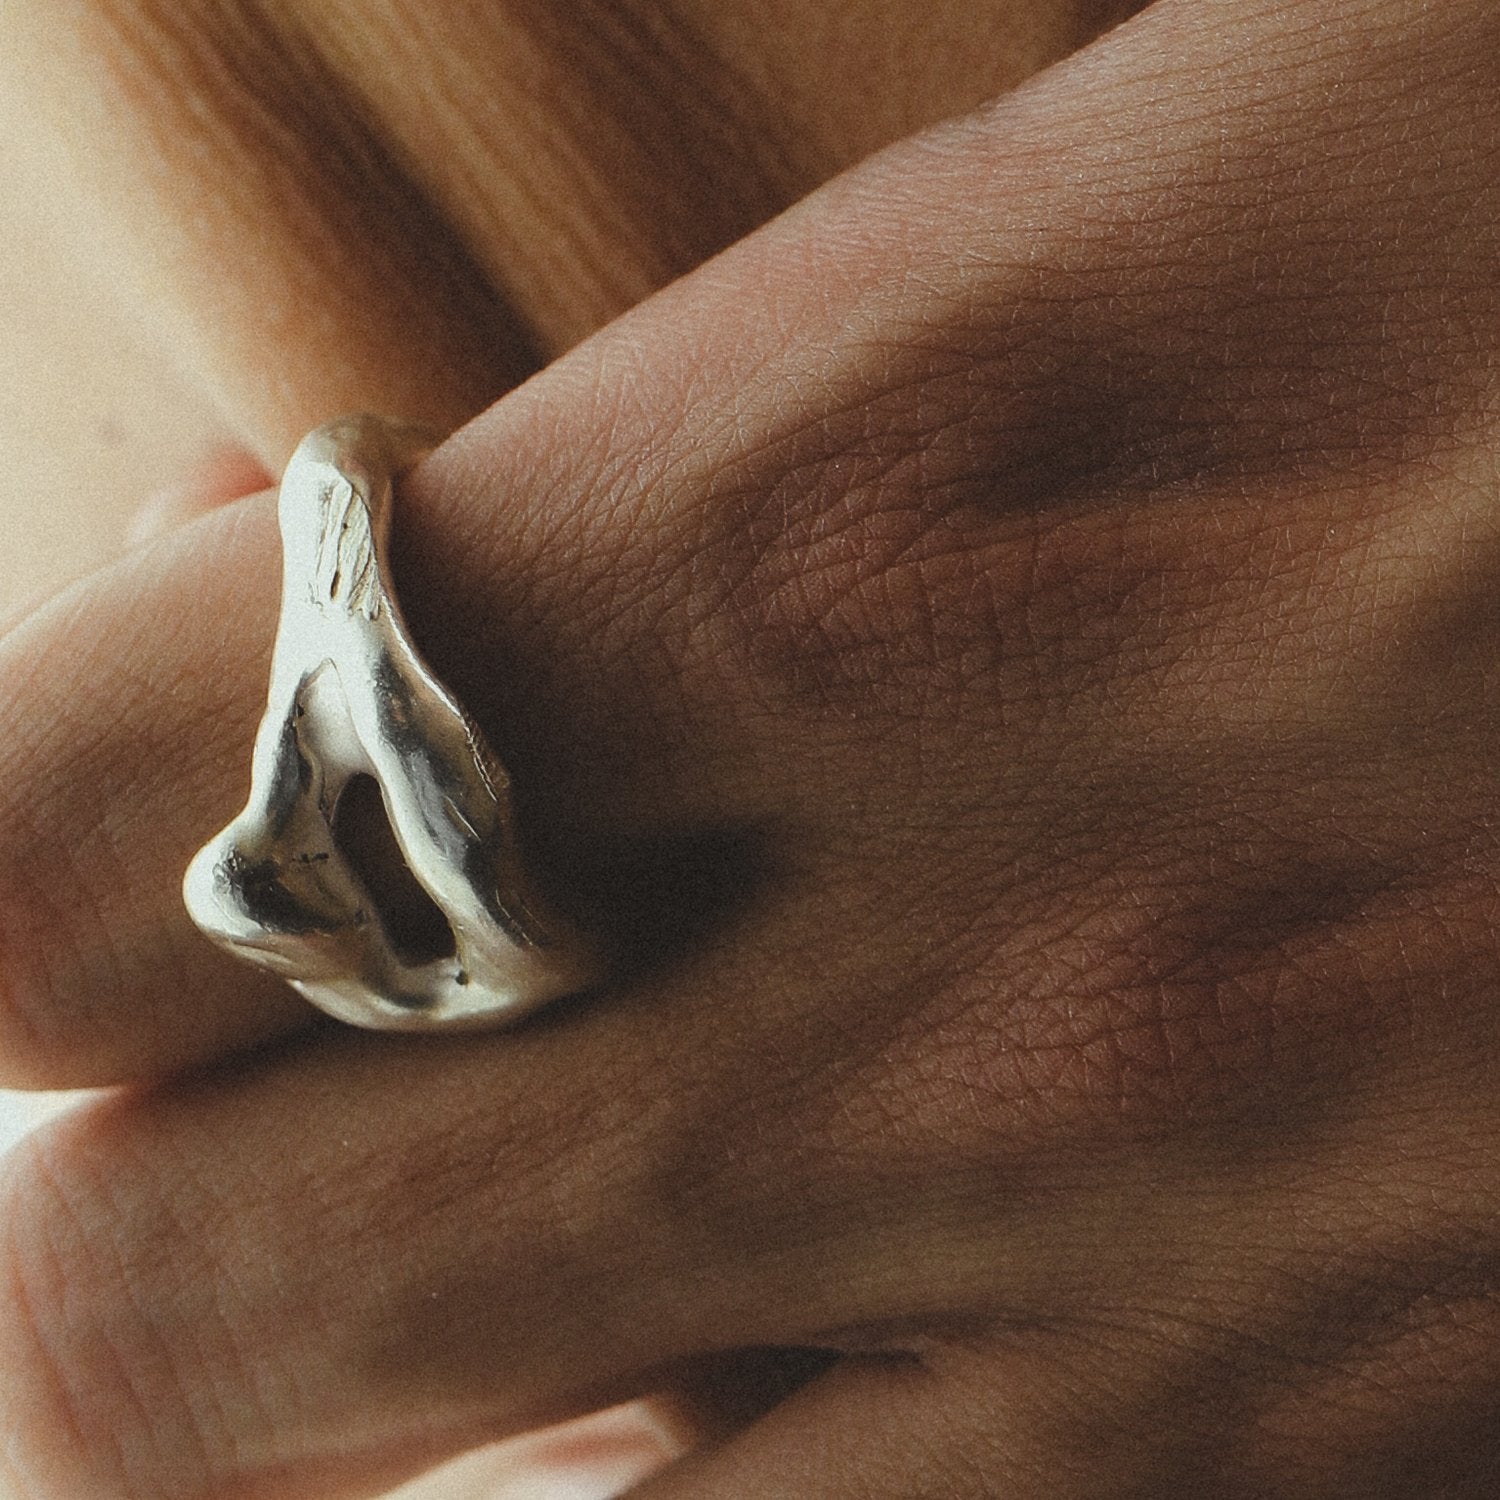 Auryn 04 Silver Ring - by Studio Aseo